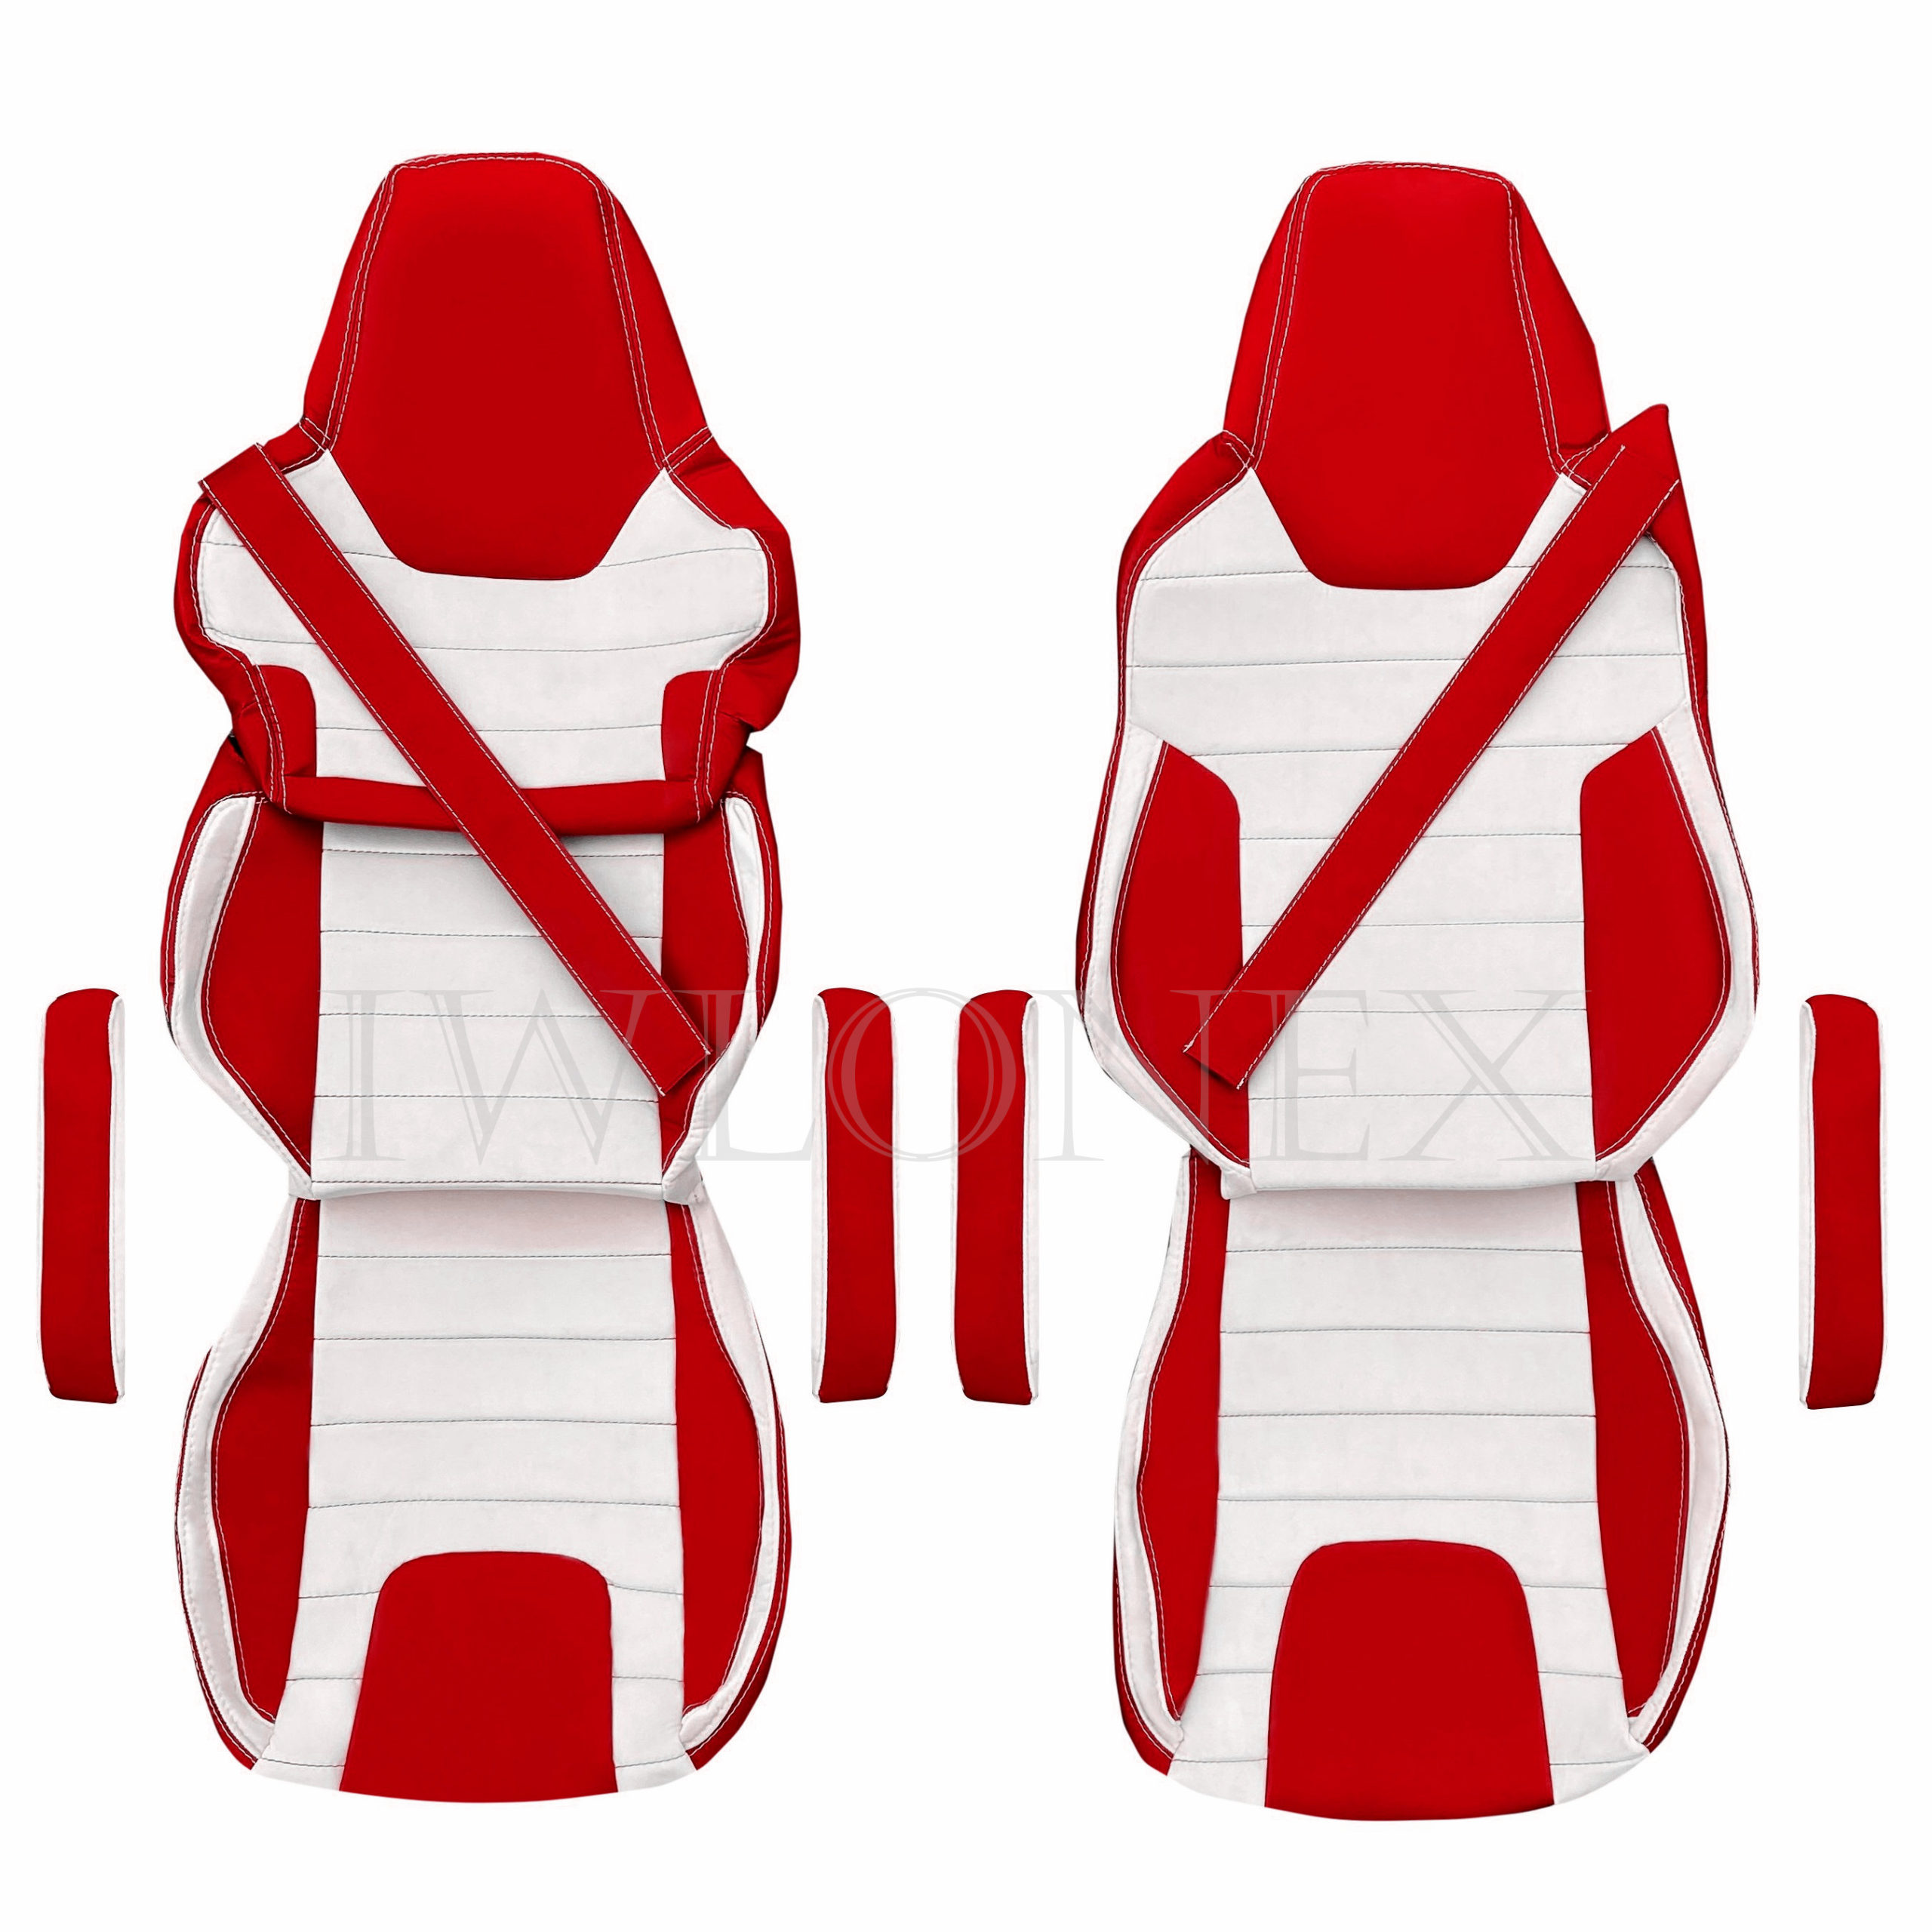 LKW Sitzbezüge passend für MAN TGX, GX, GM New ab 2020 - Rot - Iwlonex